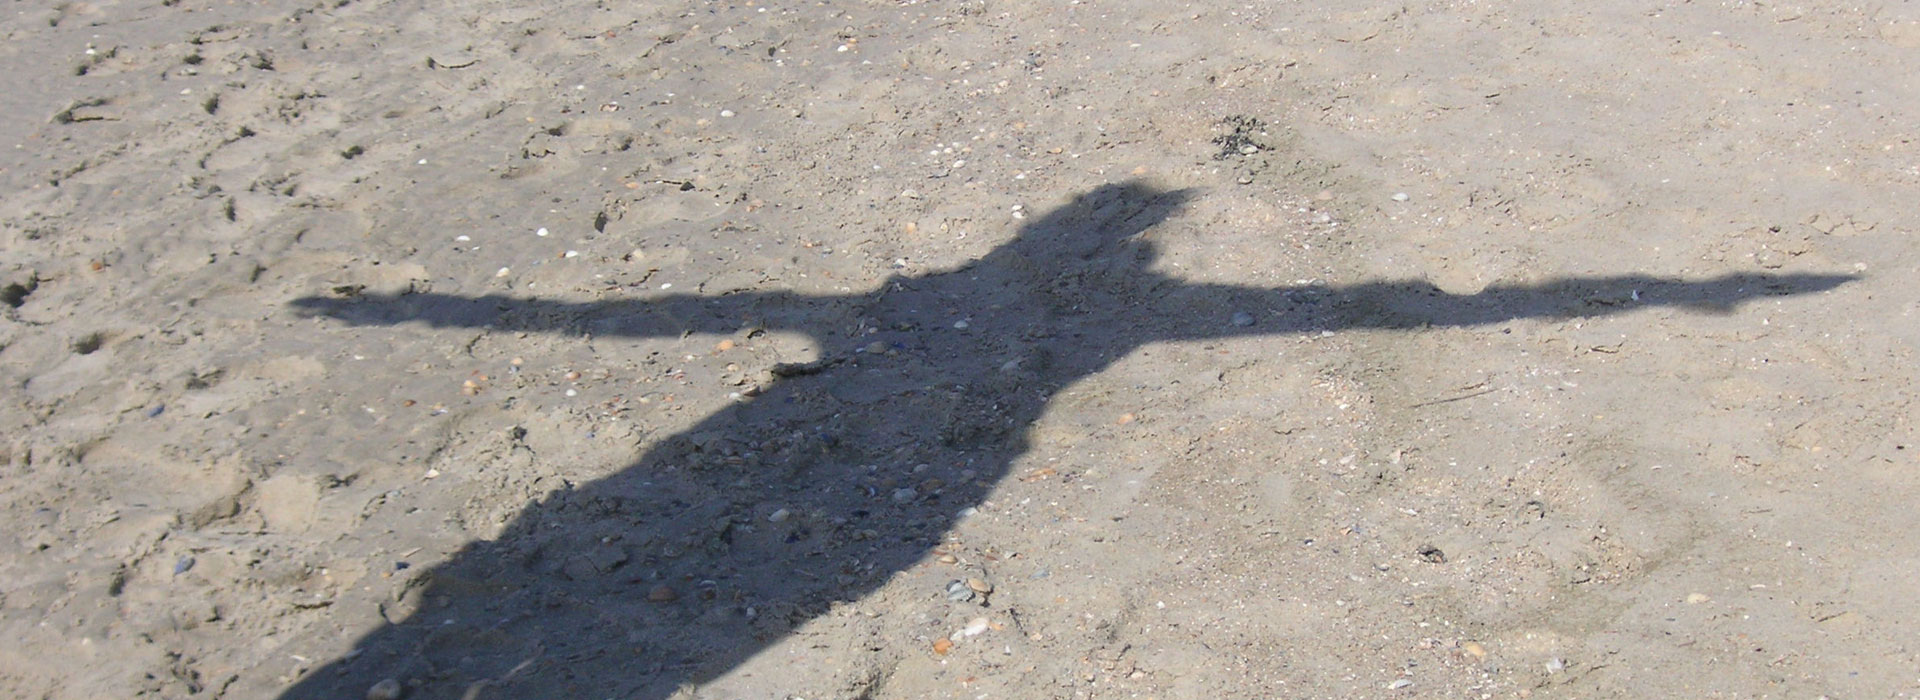 Der Schatten einer Person am Strand wurde mit ausgebreiteten Armen fotografiert. Es sieht aus wie ein Engel mit Flügeln.